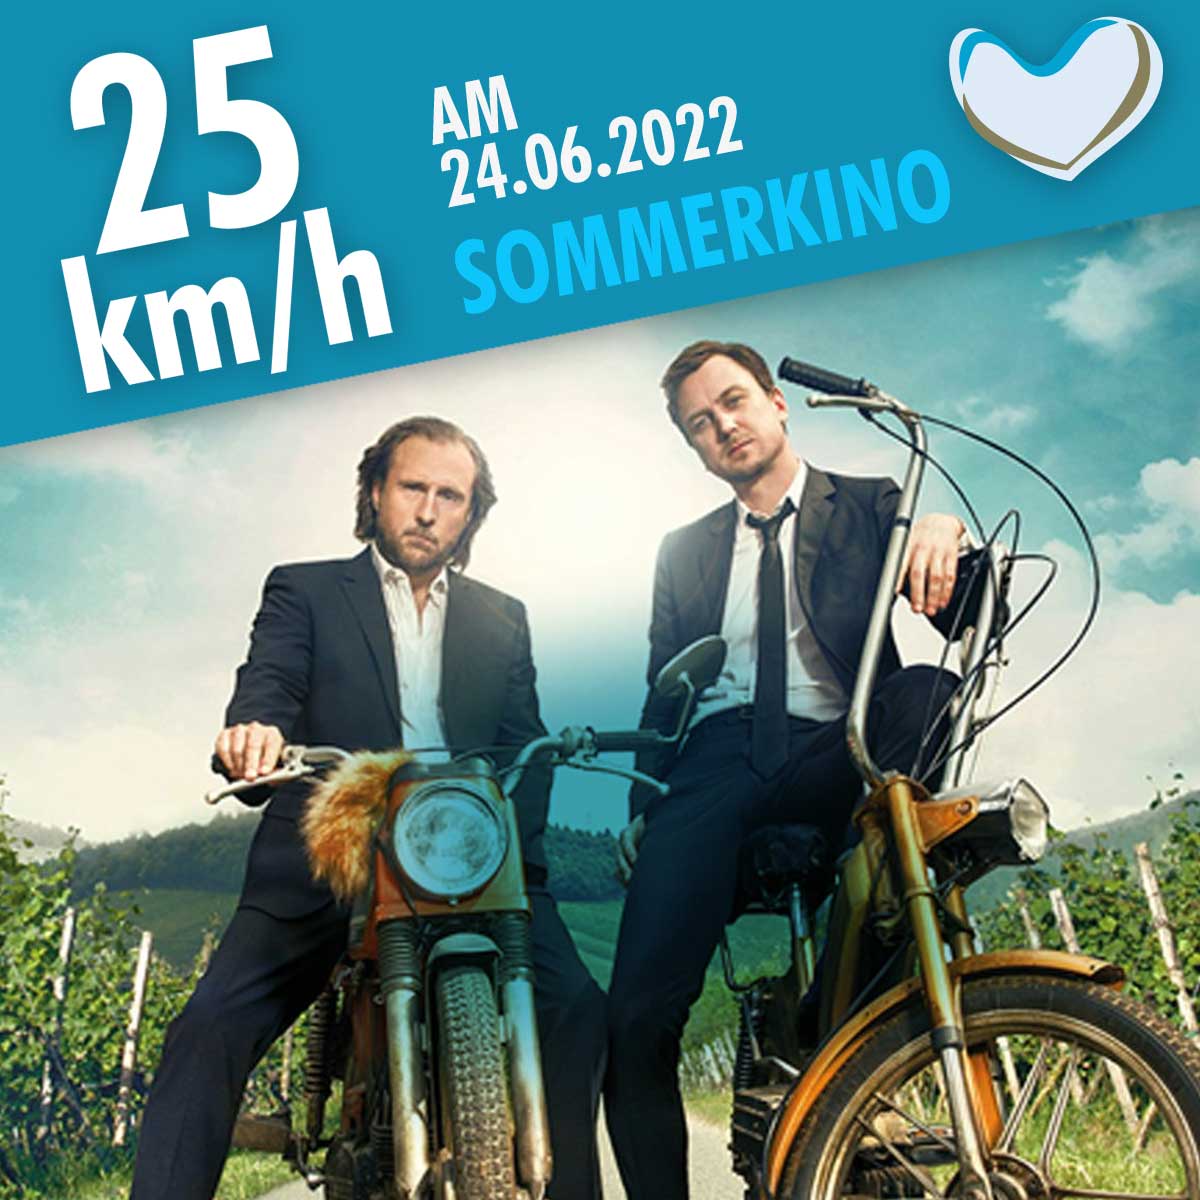 Sommerkino 2022 â€“ 25 km/h 